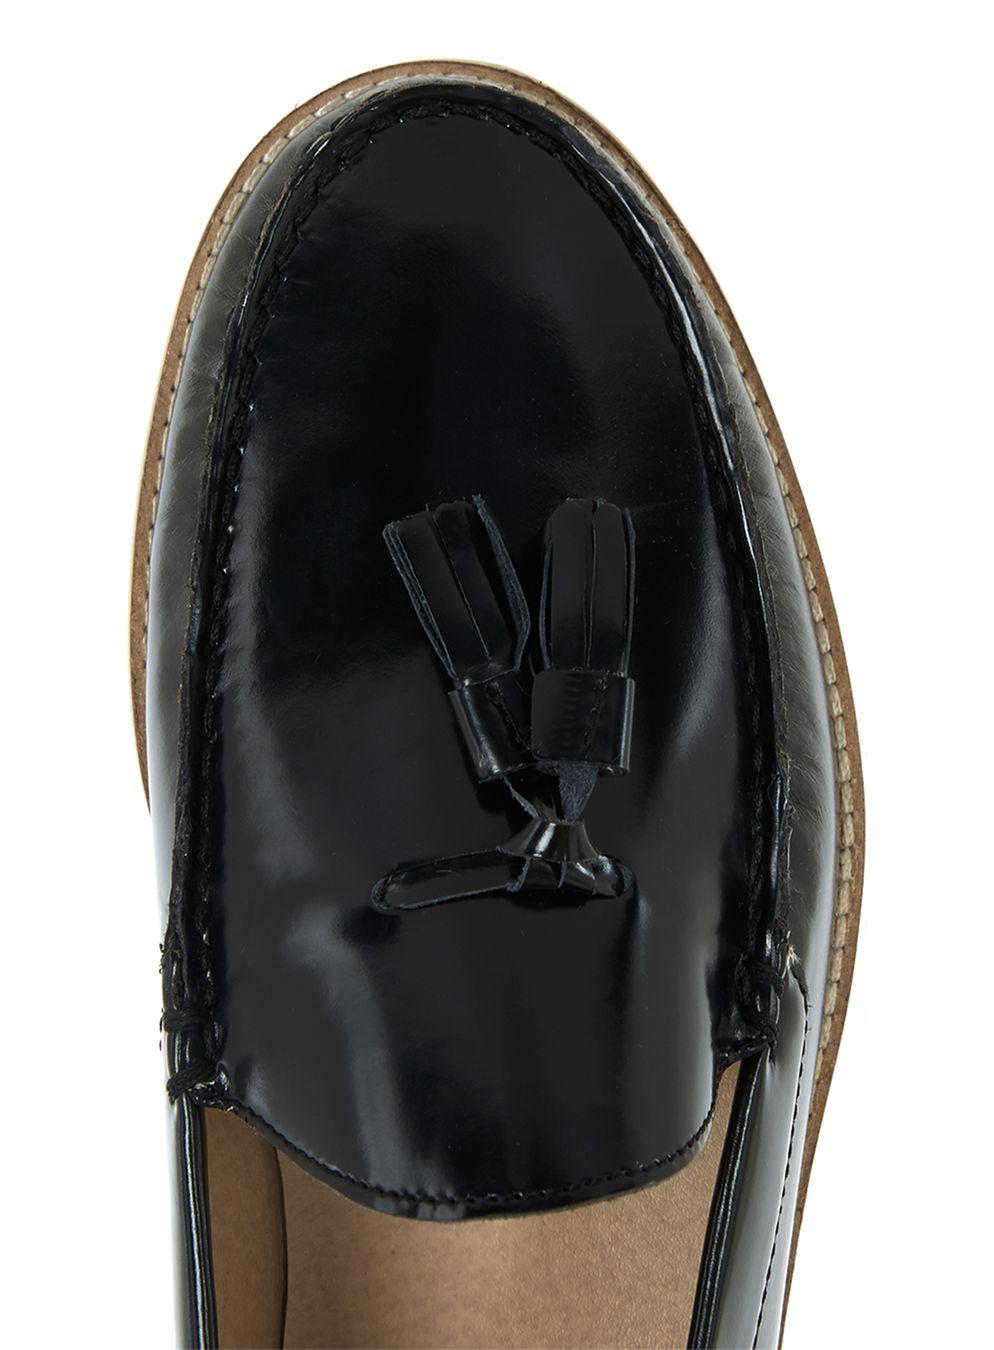 Lyst - TOPMAN Black Leather Tassel Loafer in Black for Men